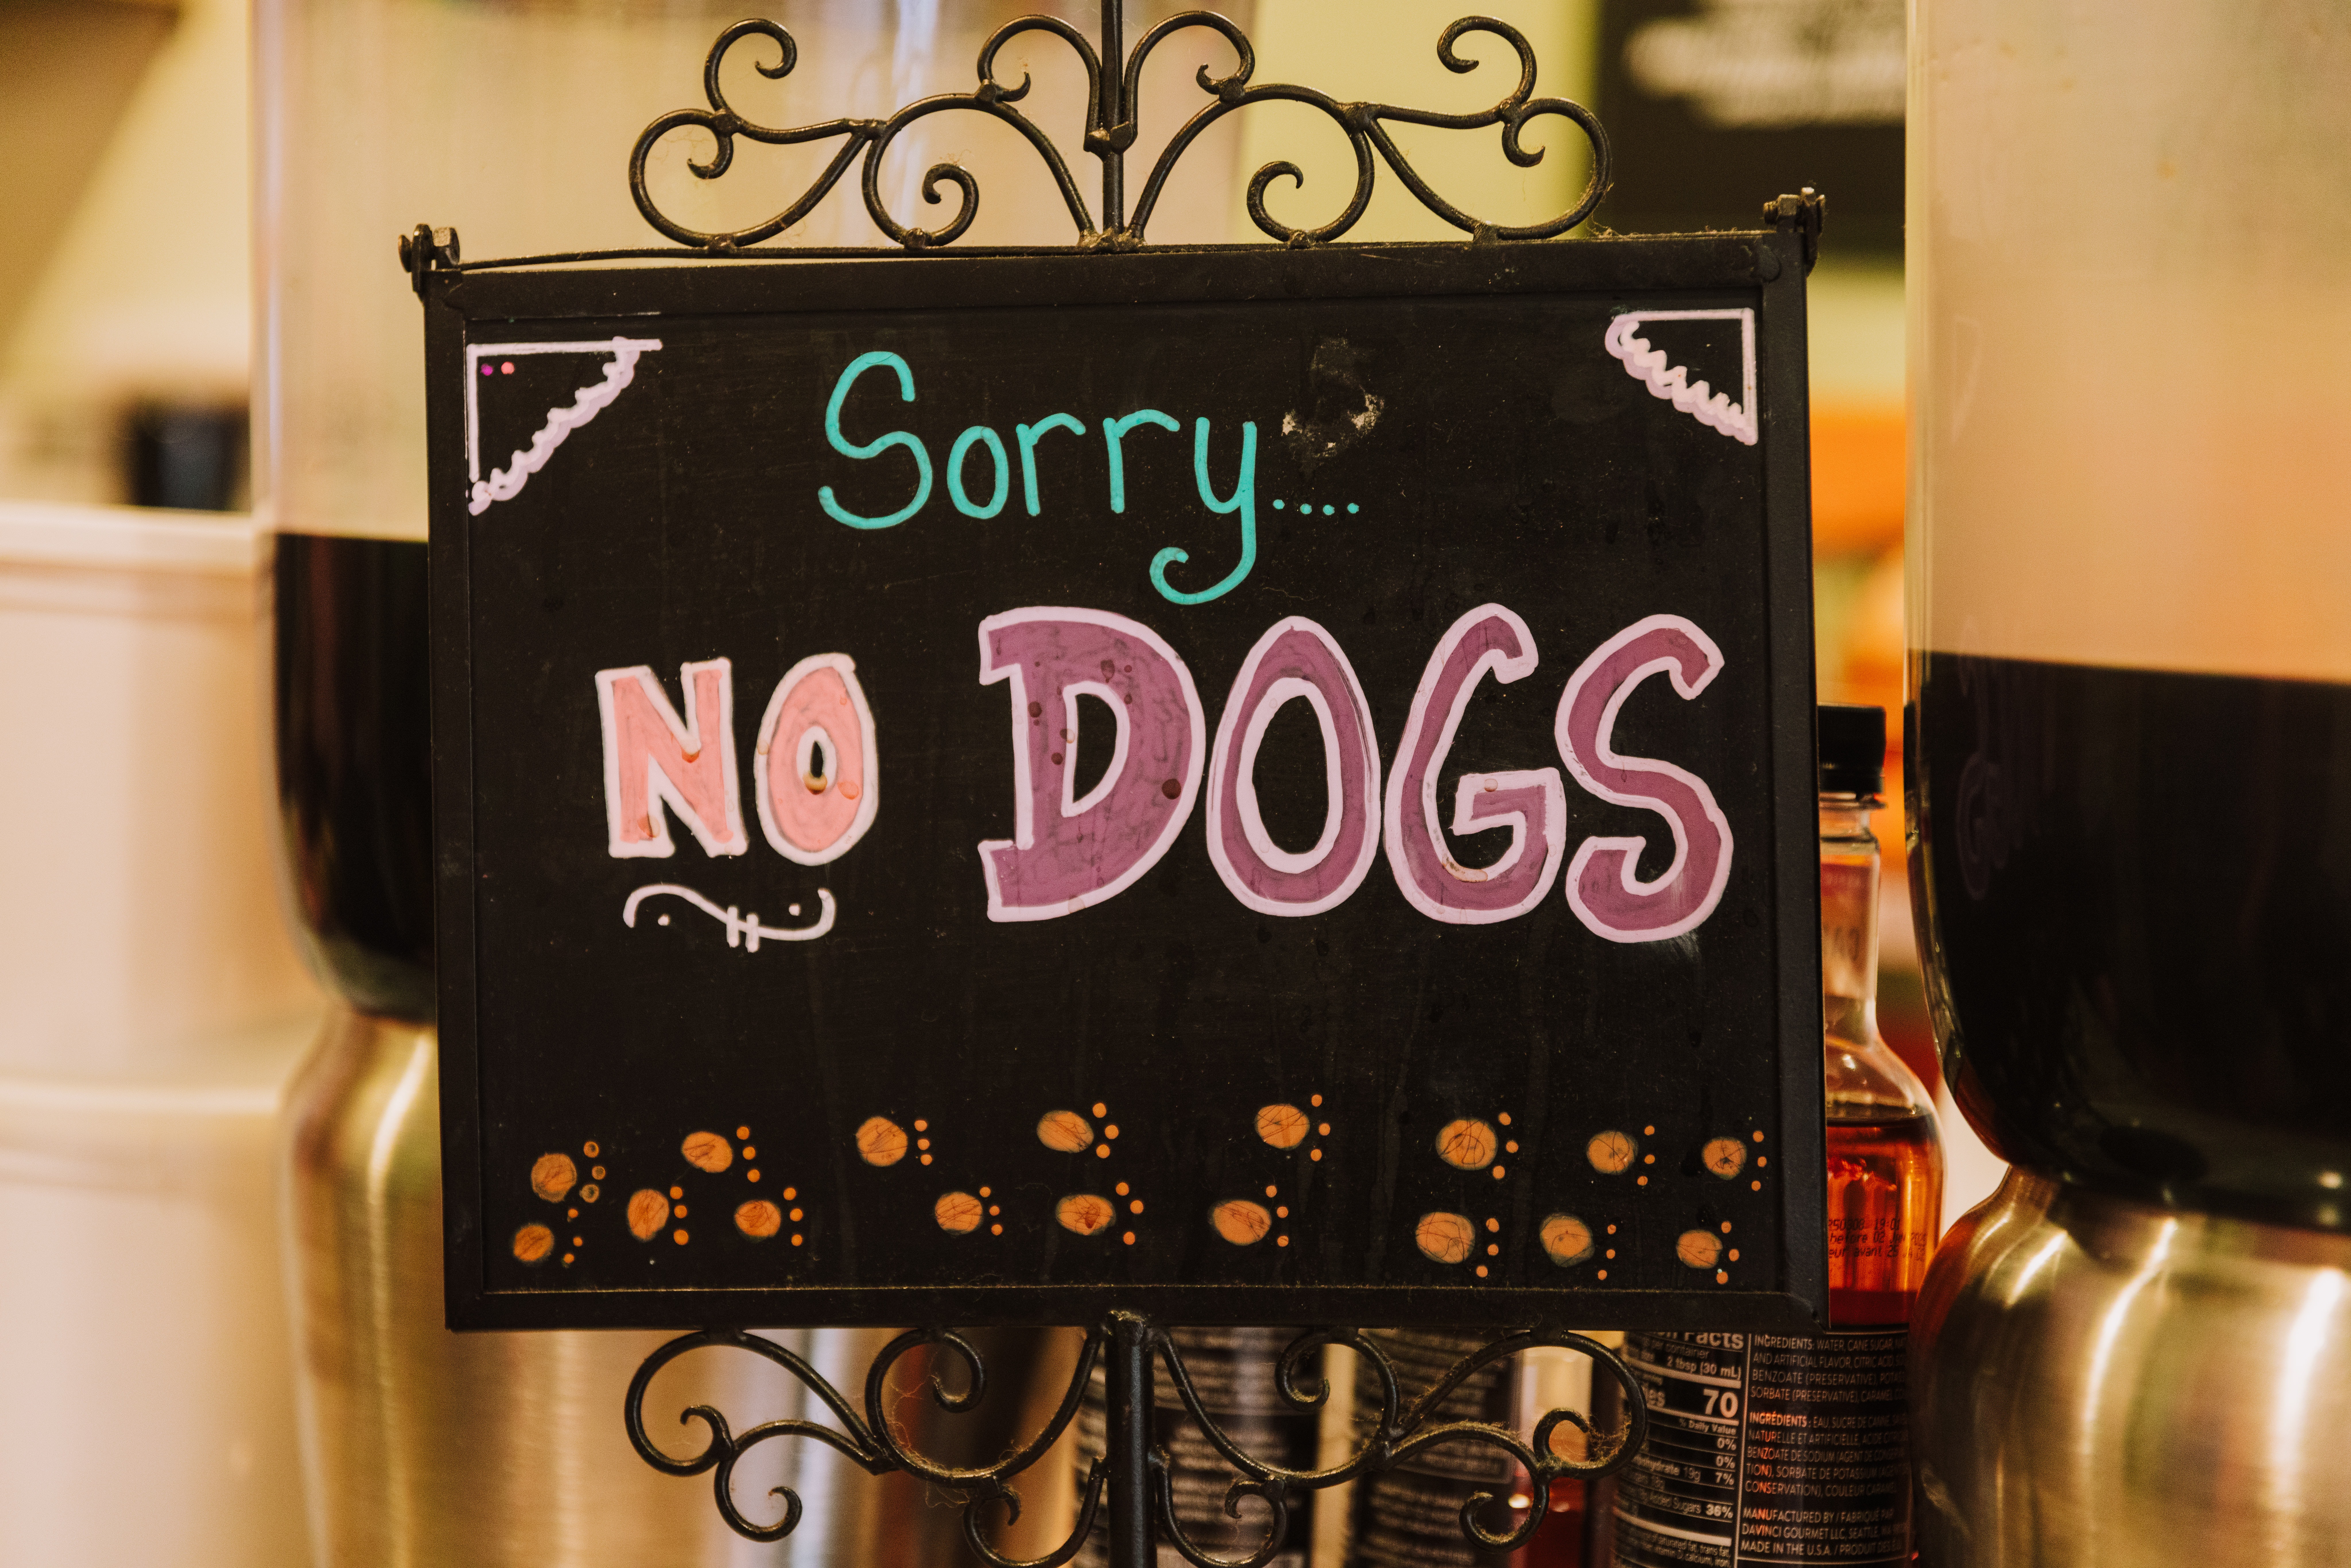 A No Dog Sign | Source: Pexels